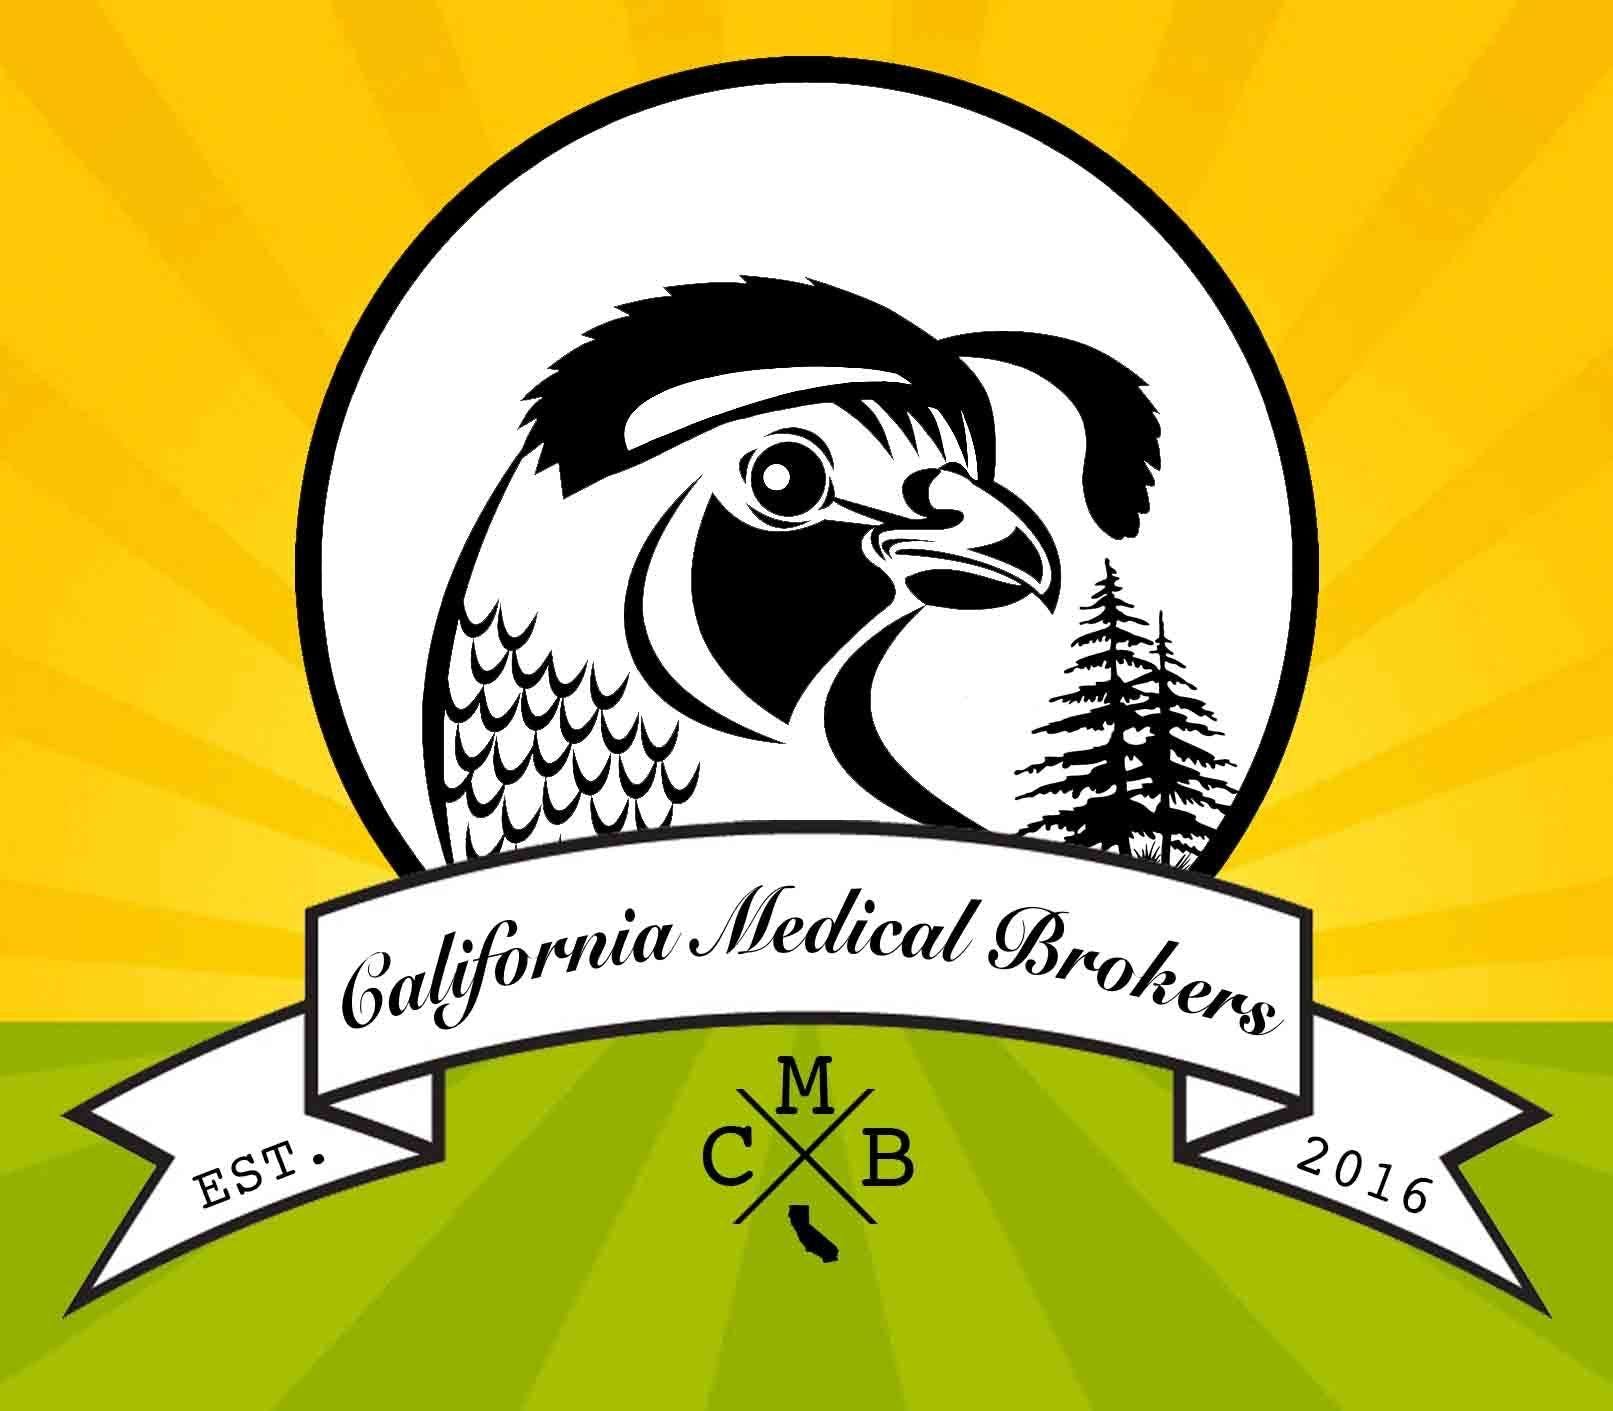 CMB - California Medical Brokers - Medical Marijuana Doctors - Cannabizme.com